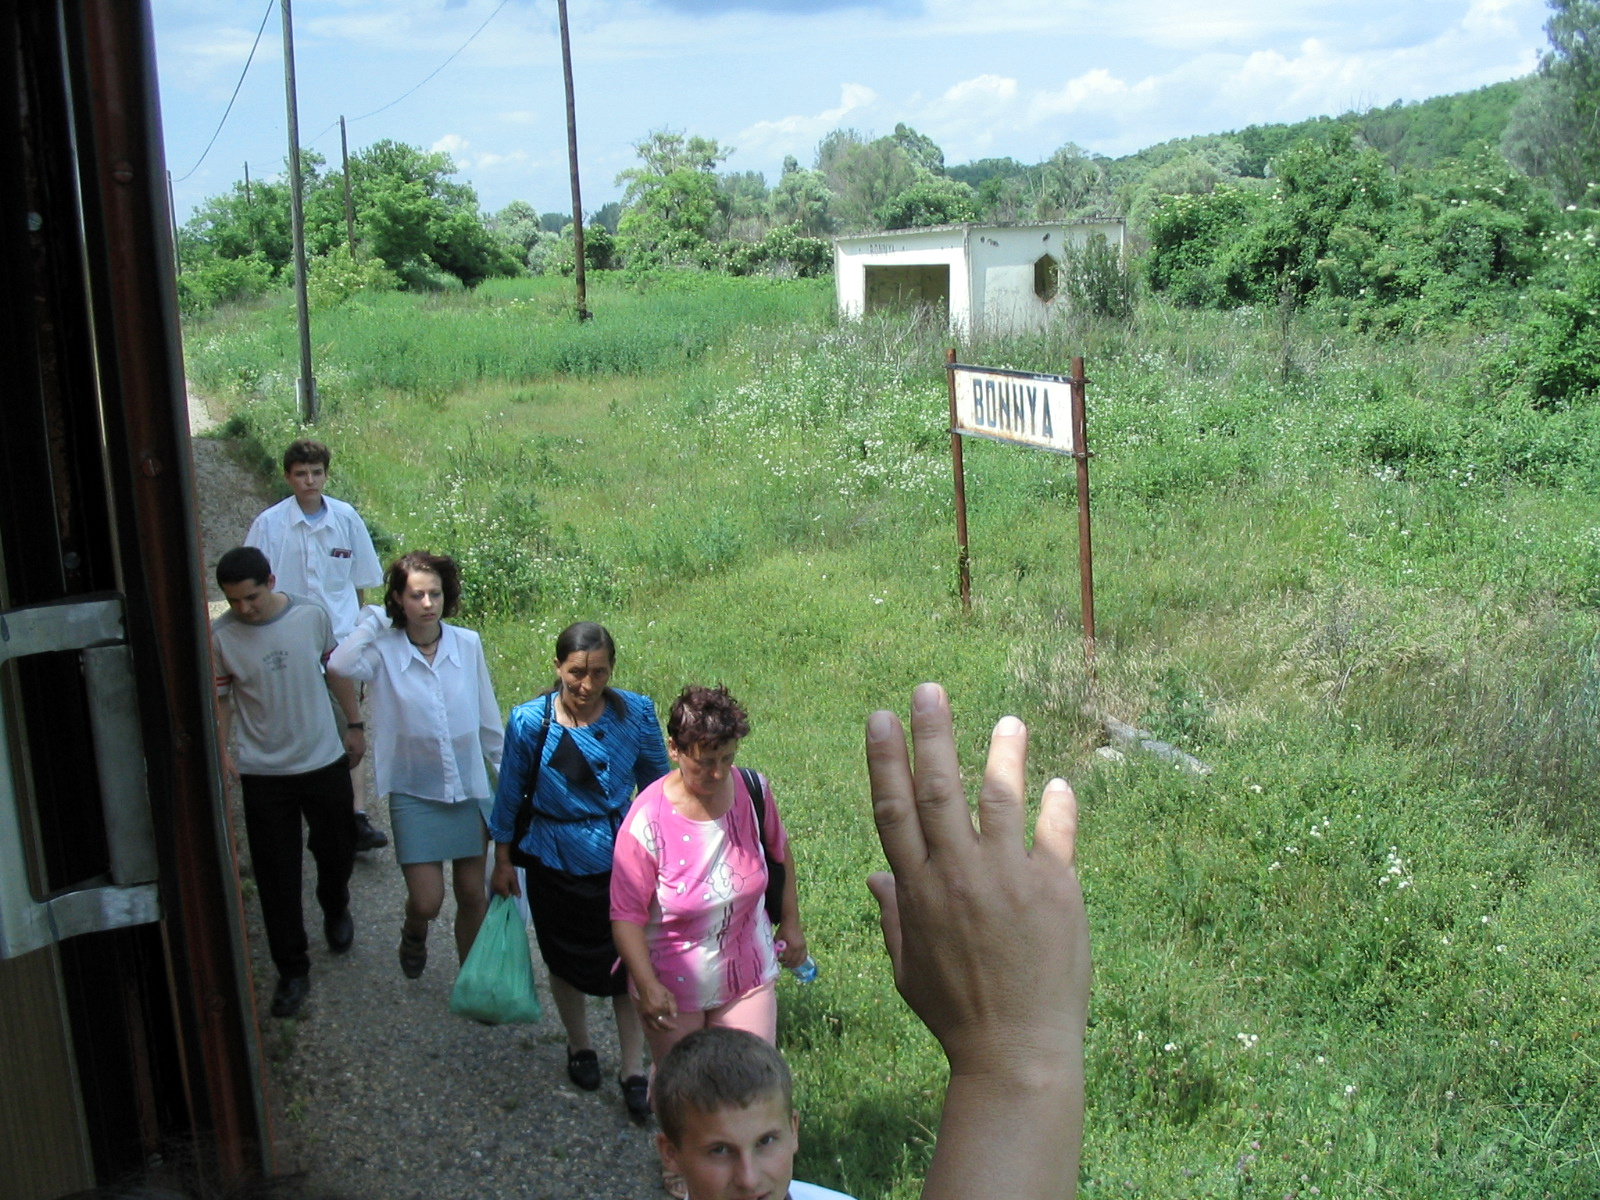 Bonnya, Siófok–Kaposvár vonal. A nehéz sorsú vidékek lakóitól a most sem túl színvonalas szolgáltatás egy részét is elveszik